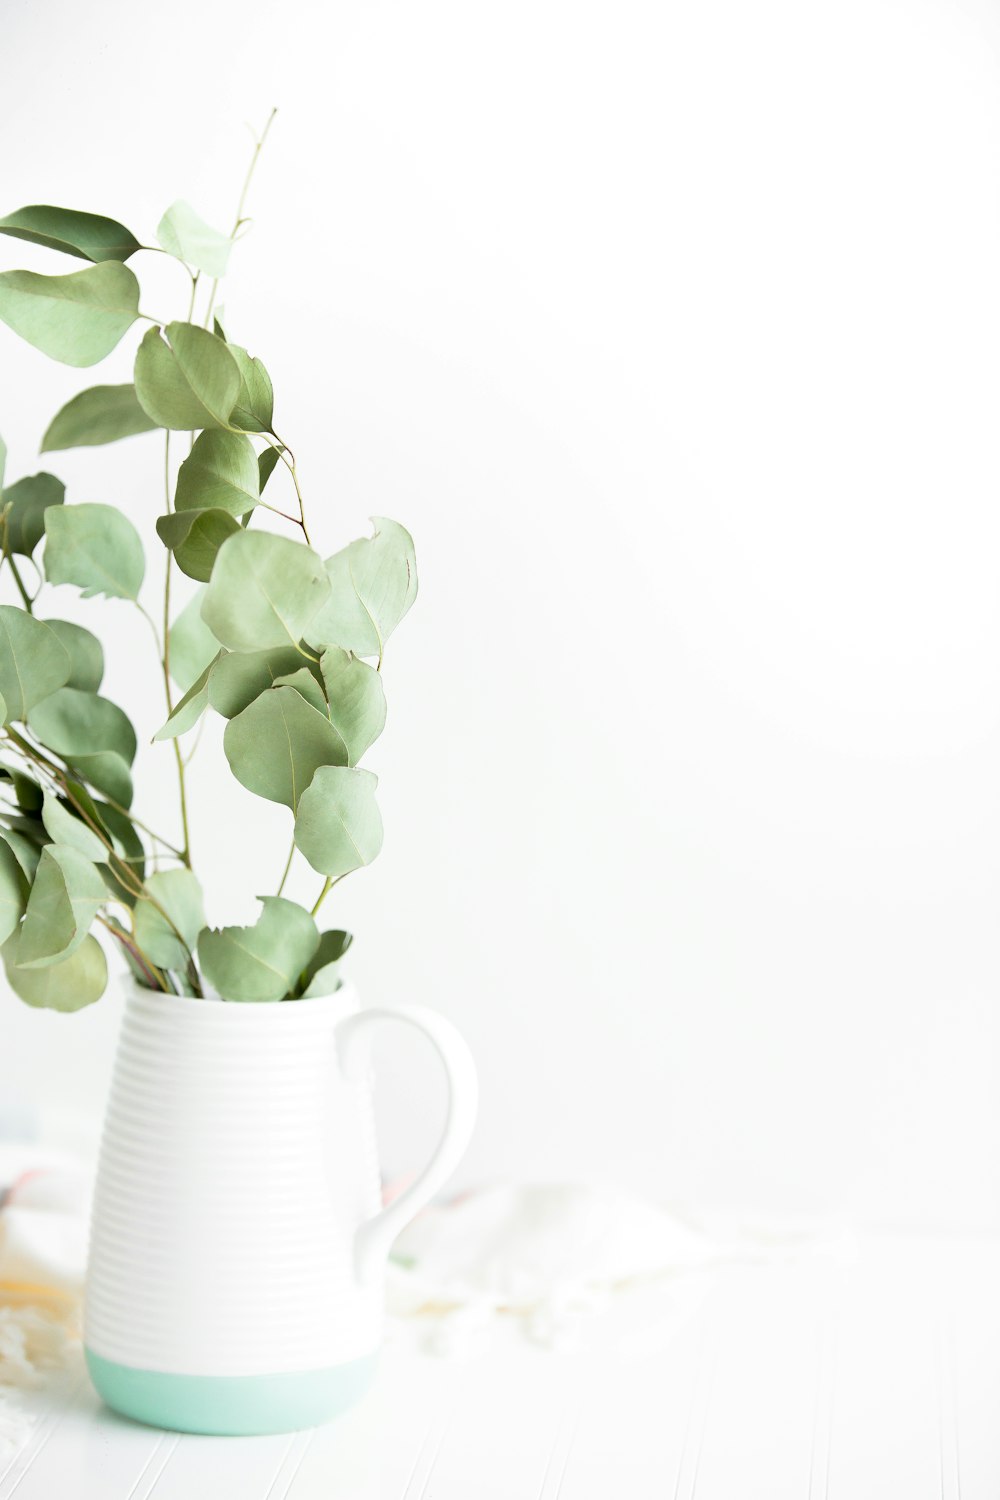 白い陶器の花瓶に鉢植えの緑の植物